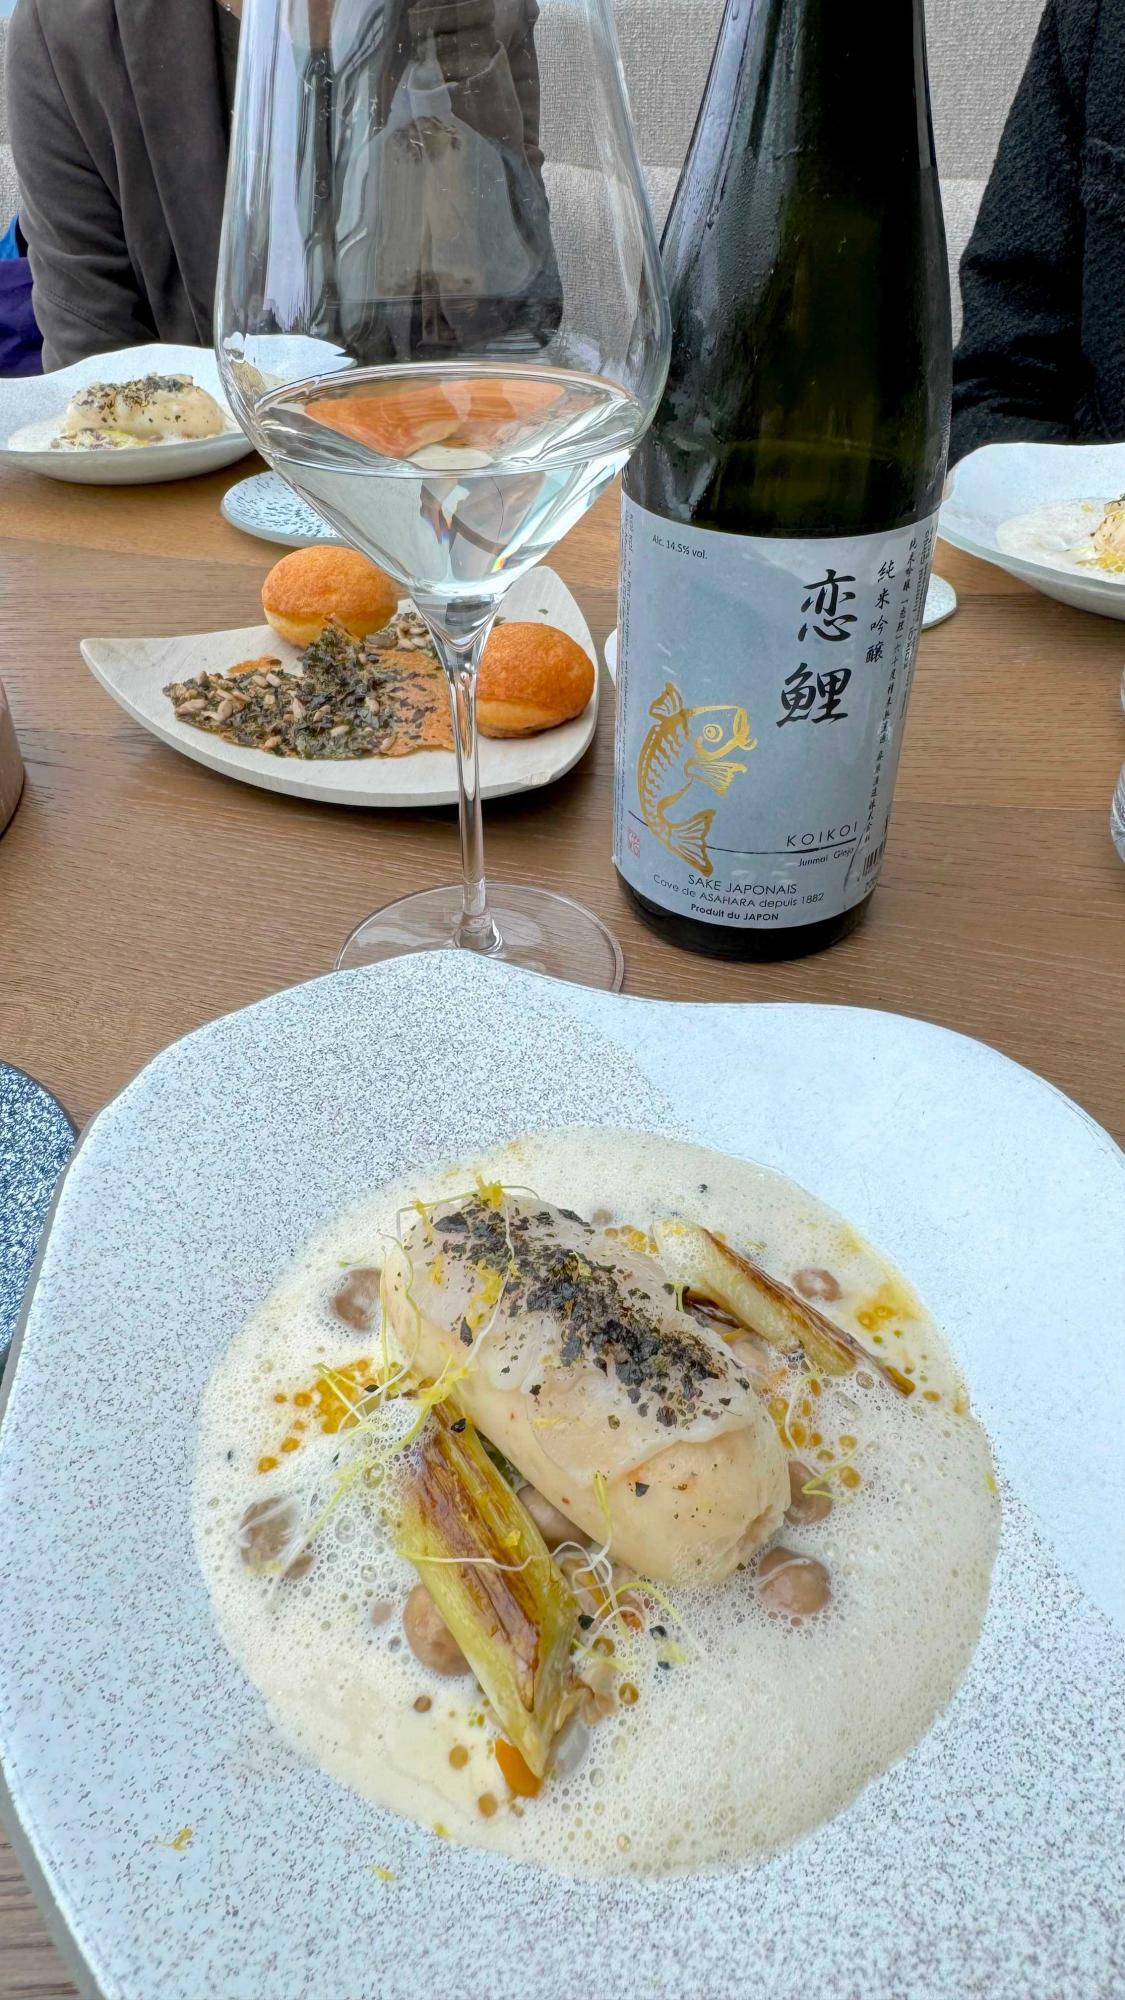 ホタテ貝の料理と、日本酒「恋鯉」のペアリング